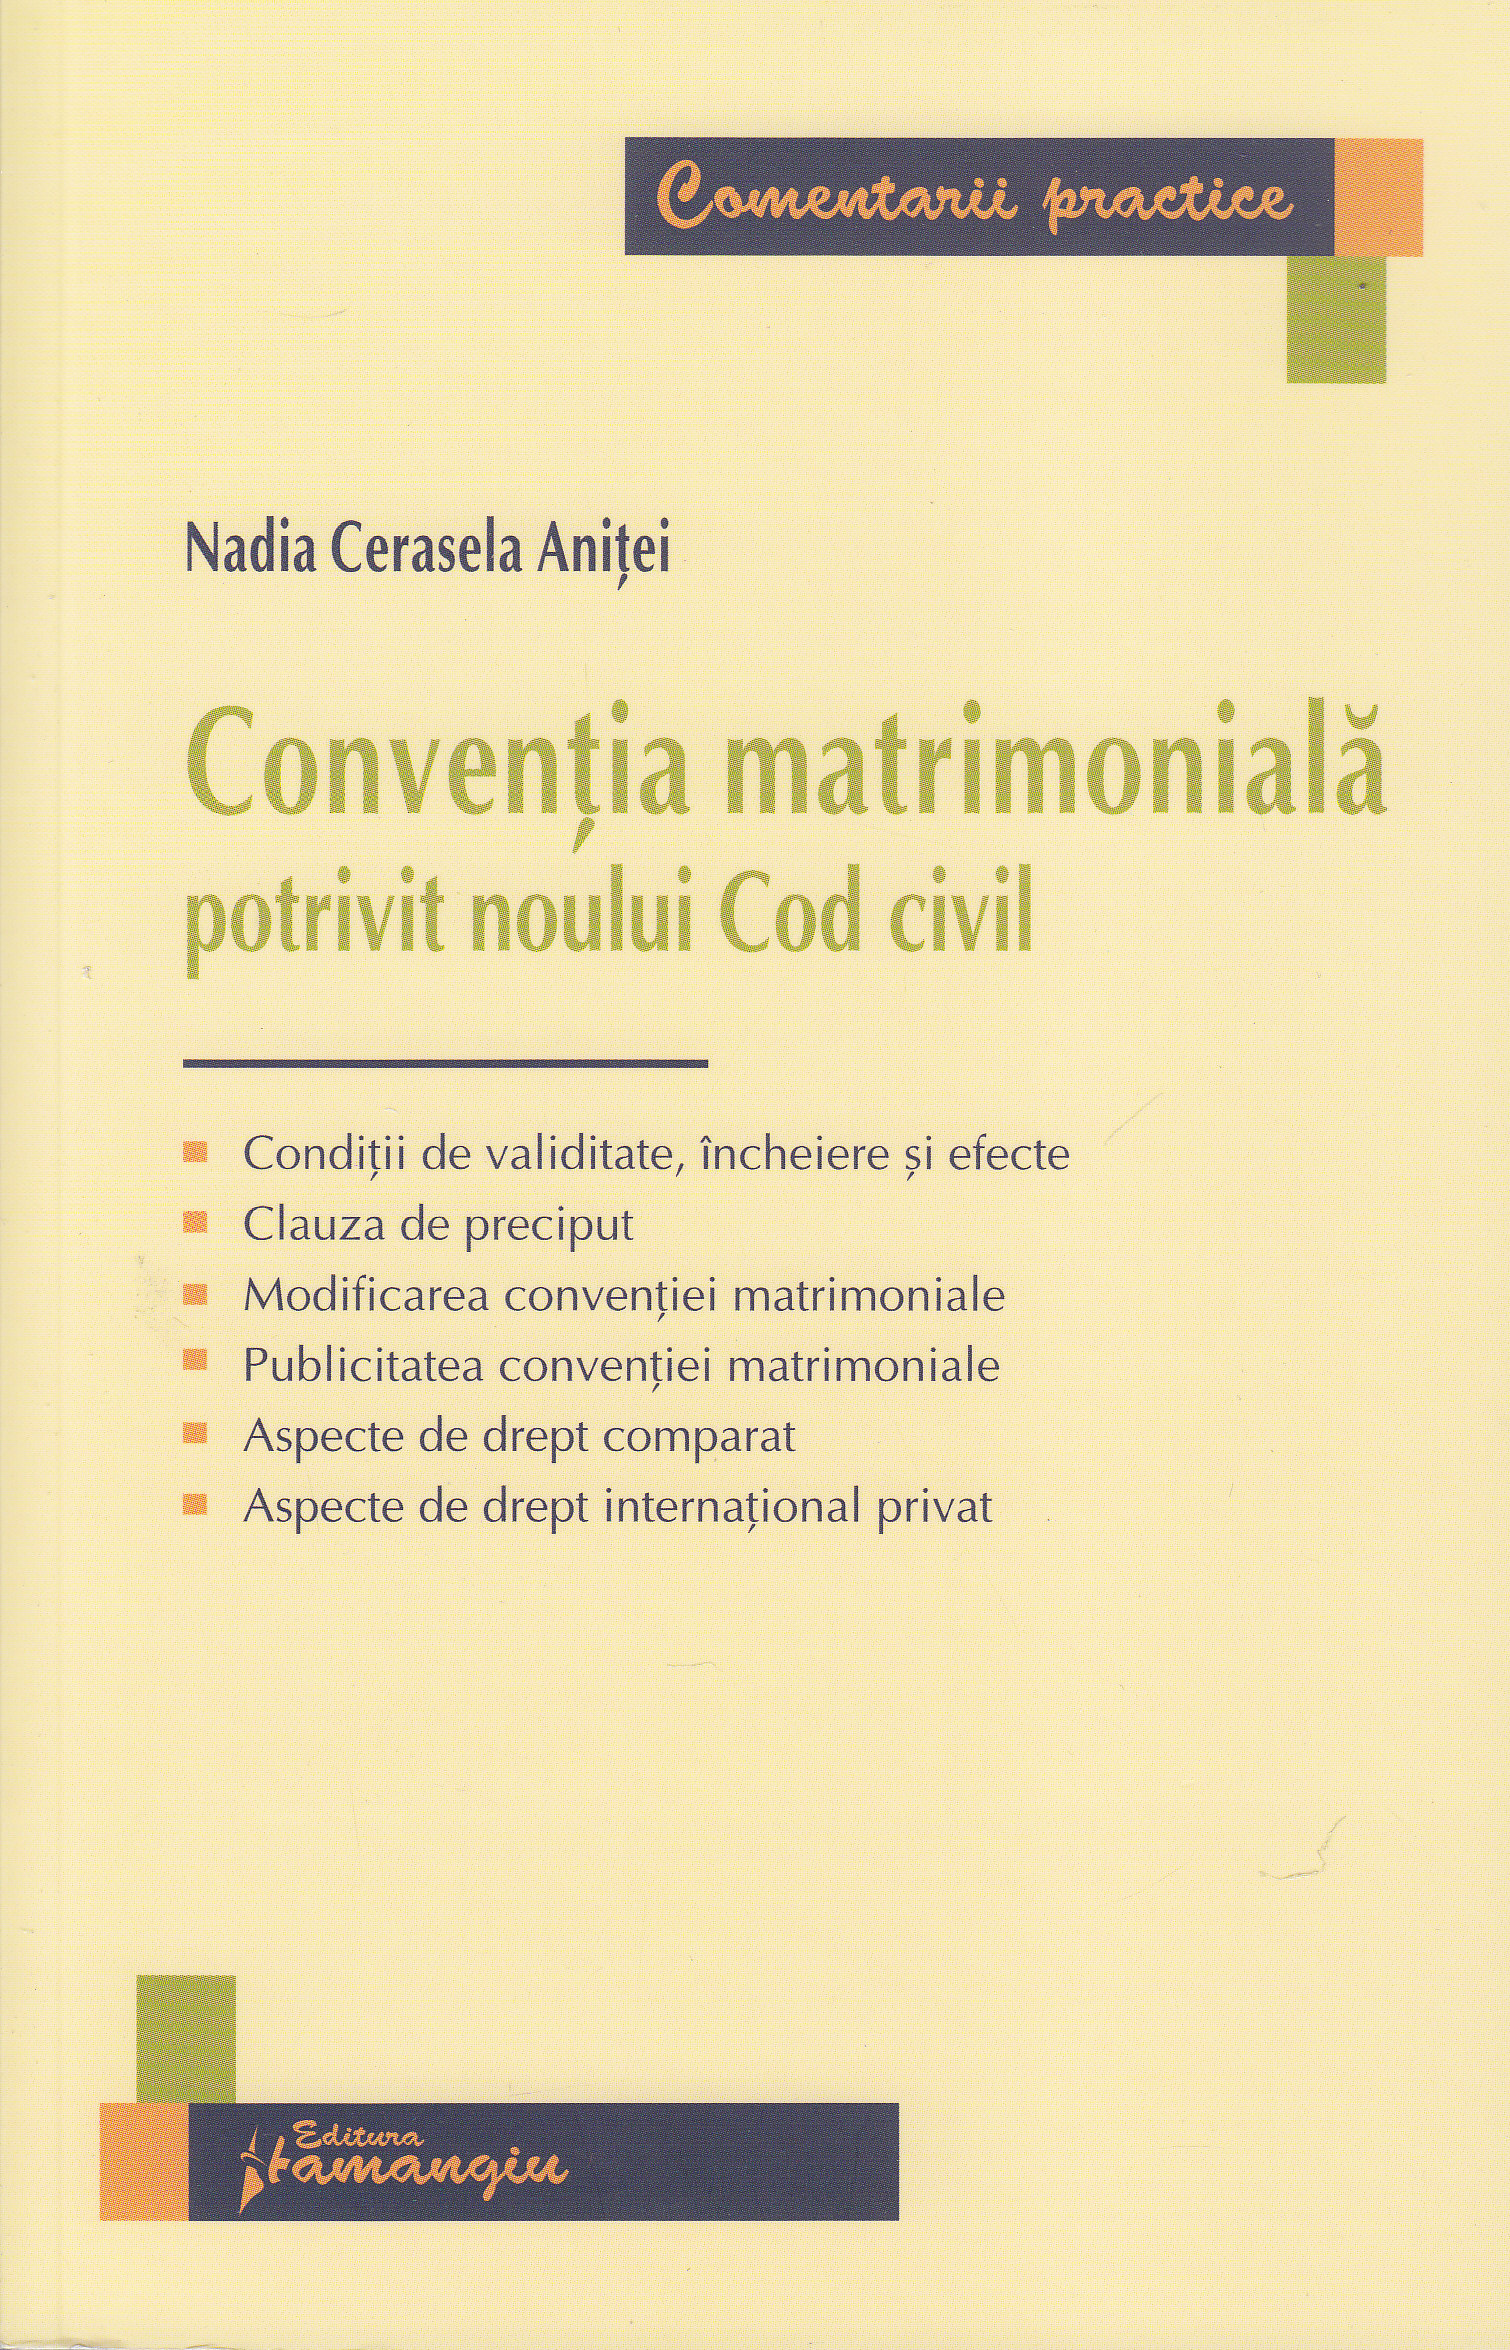 Conventia matrimoniala potrivit noului cod civil - Nadia Cerasela Anitei